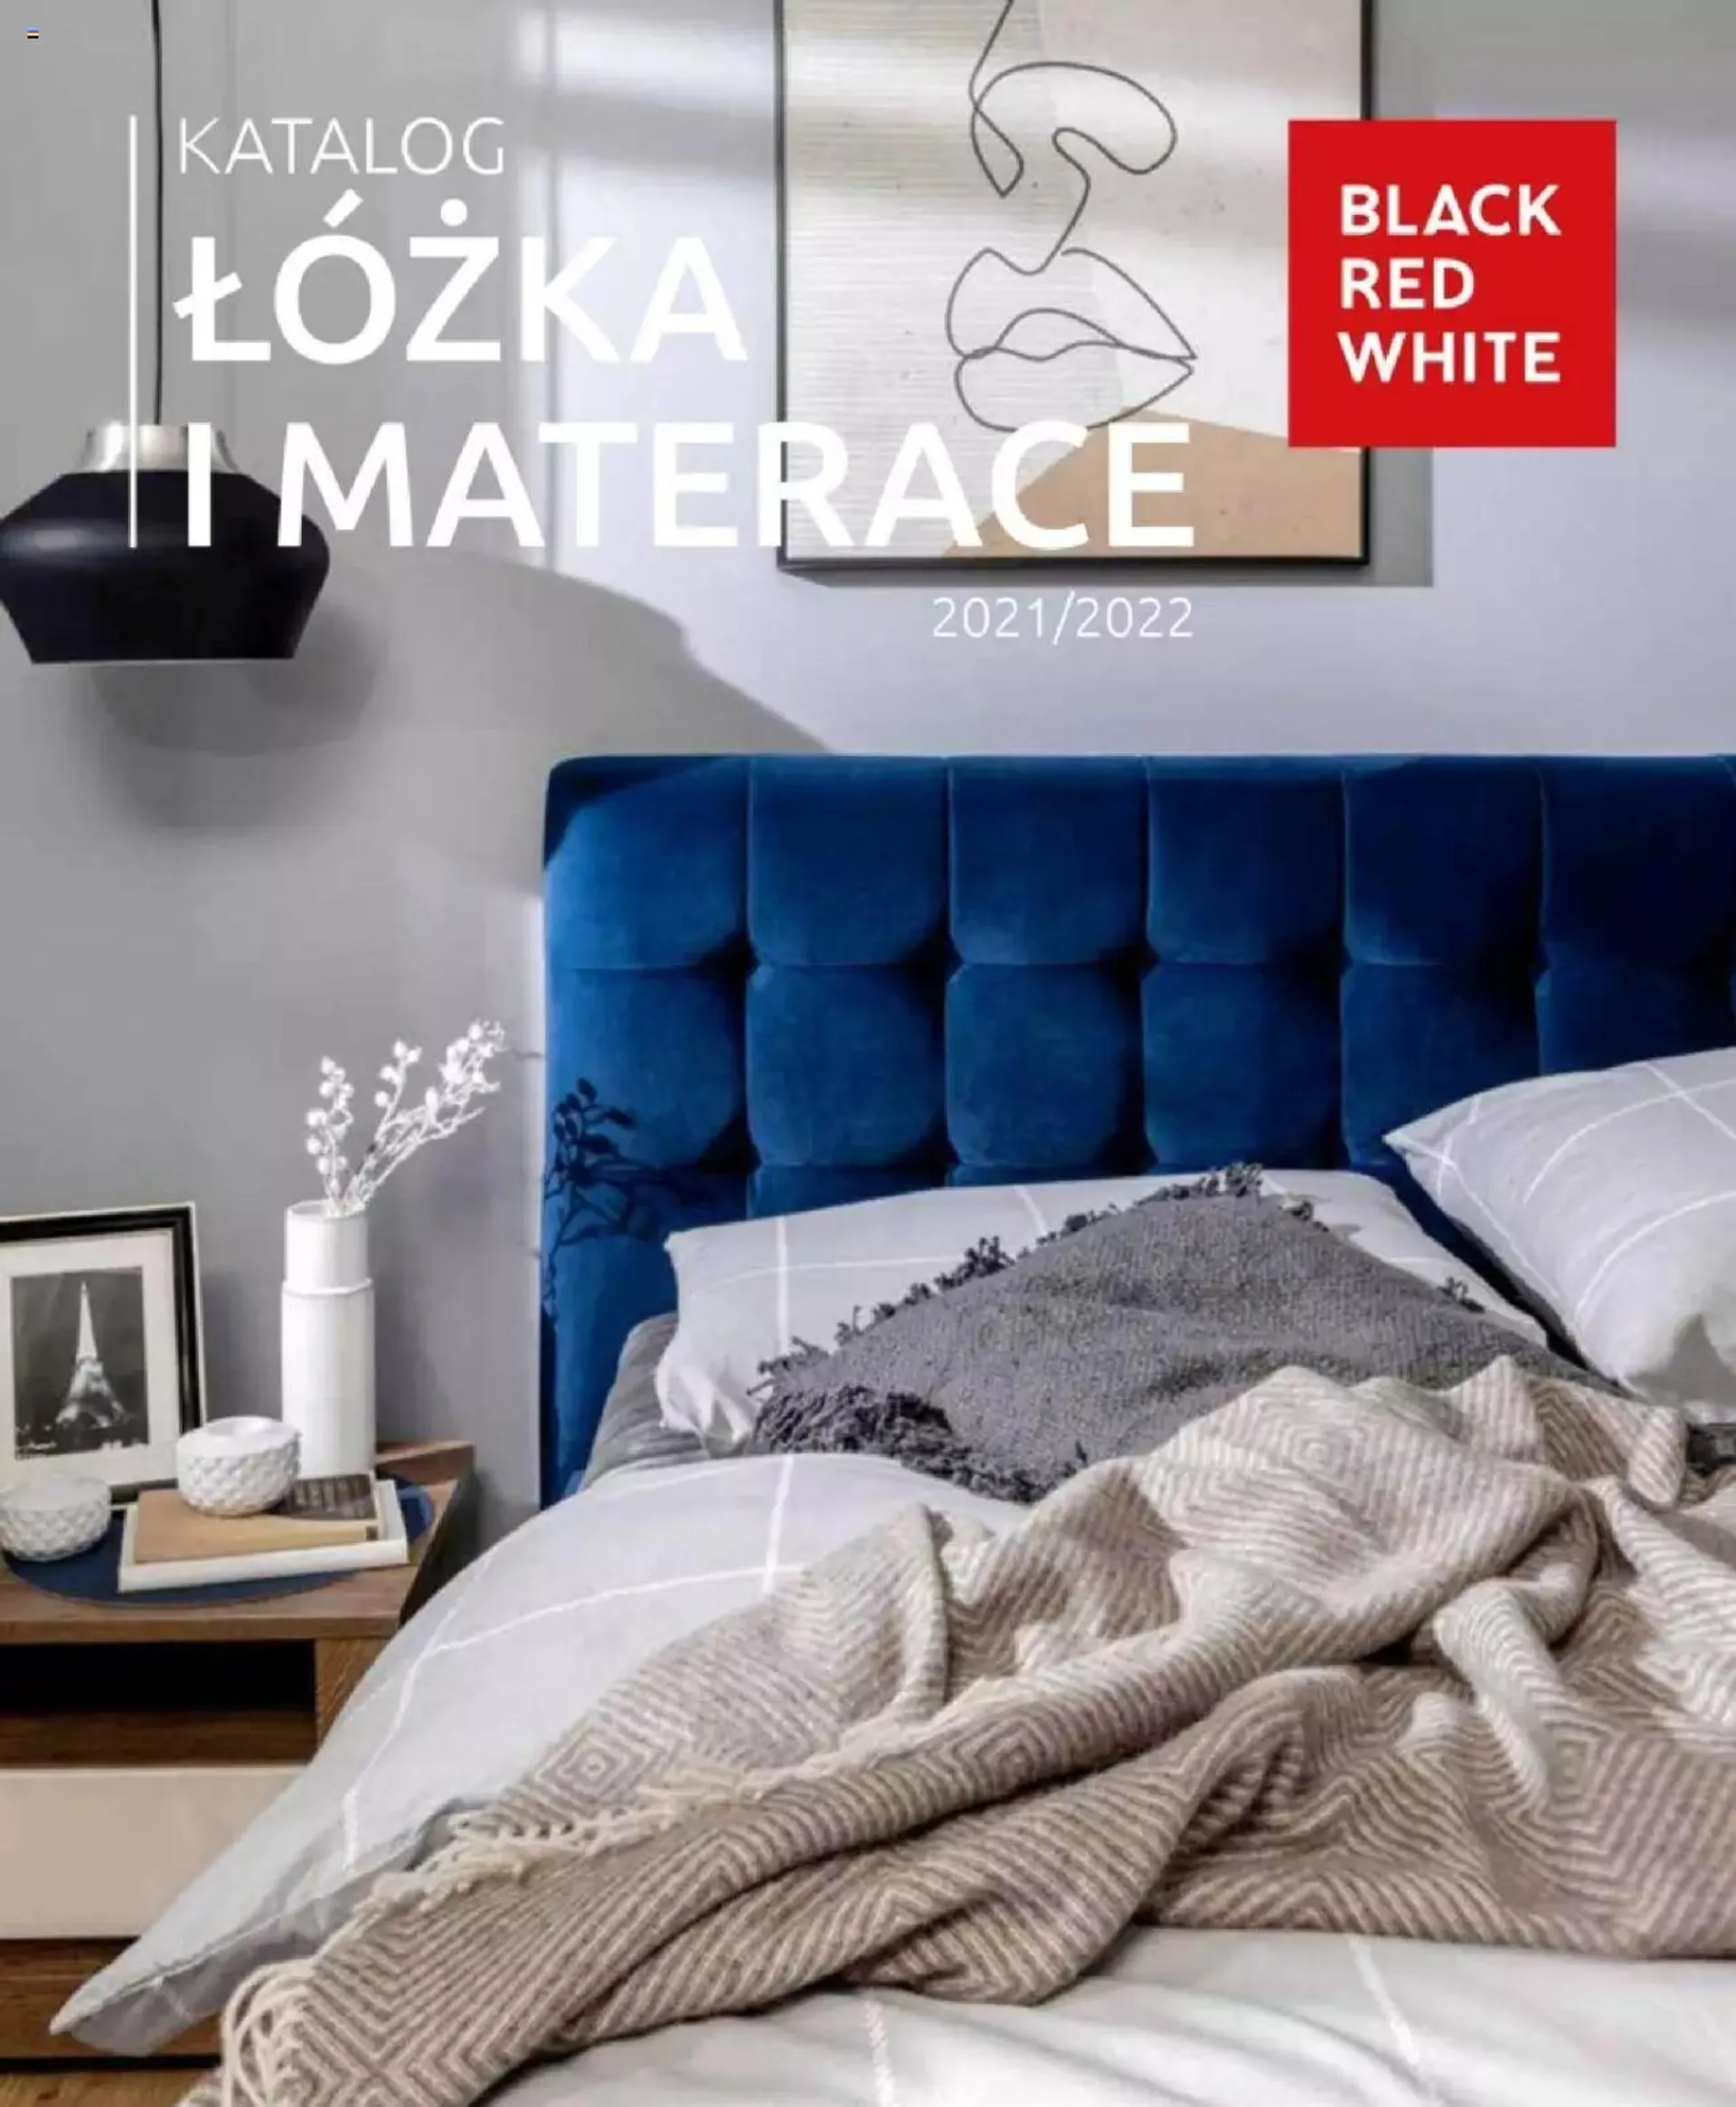 Black Red White - Katalog łóżka i materace 2021/2022 - 0